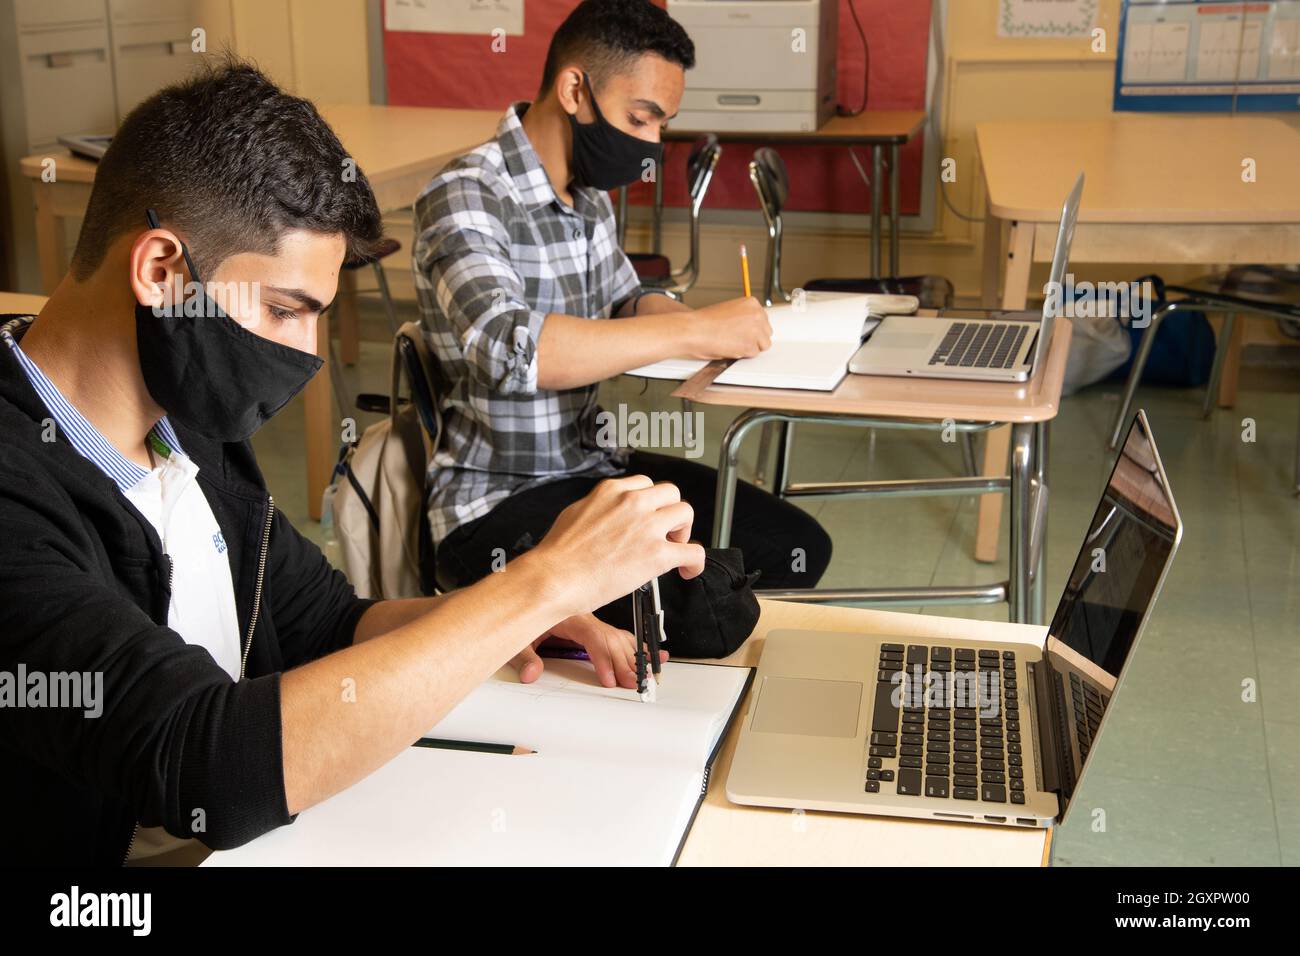 Bildung High School Klassenzimmer Szene zwei männliche Schüler, die in der Klasse arbeiten, einer mit Winkelmesser, beide mit Laptop-Computern auf Schreibtischen vor ihnen Stockfoto